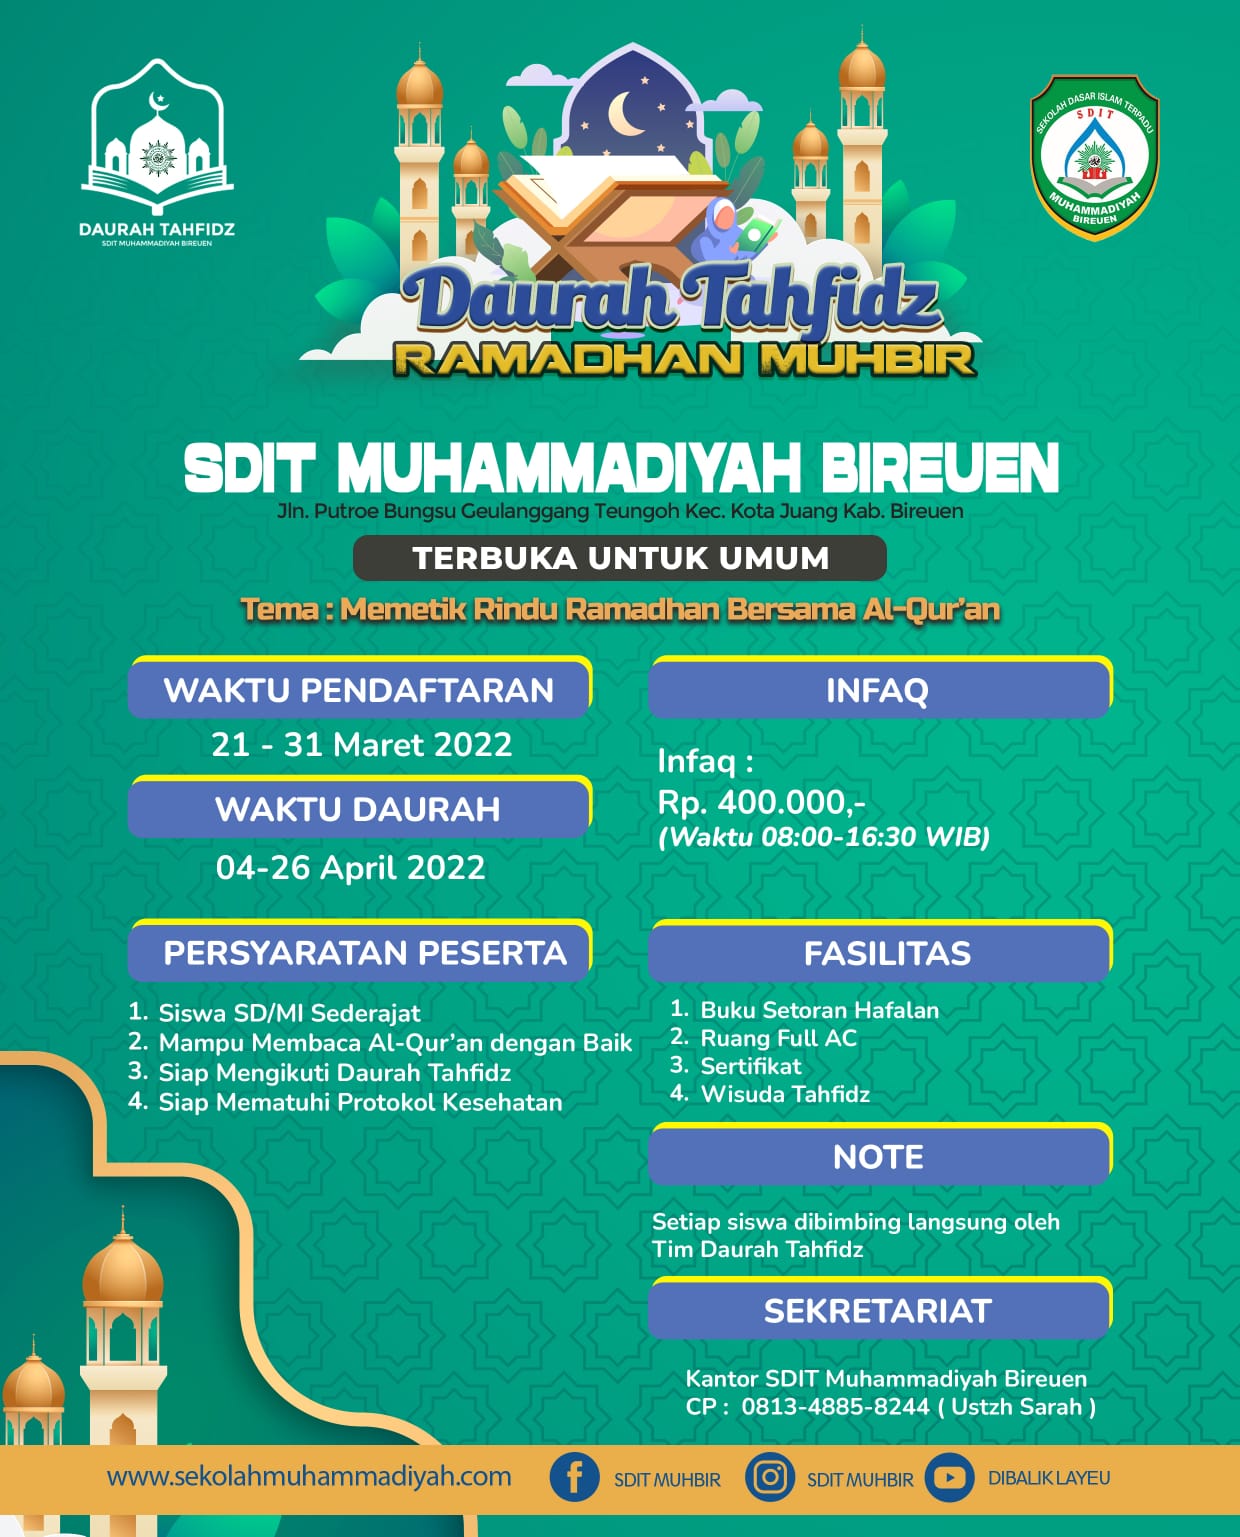 Terbuka Untuk Umum, Segera Daftar!! SDIT Muhammadiyah Bireuen Mengadakan Program Daurah Tahfidz Qur'an Selama Bulan Suci Ramadhan